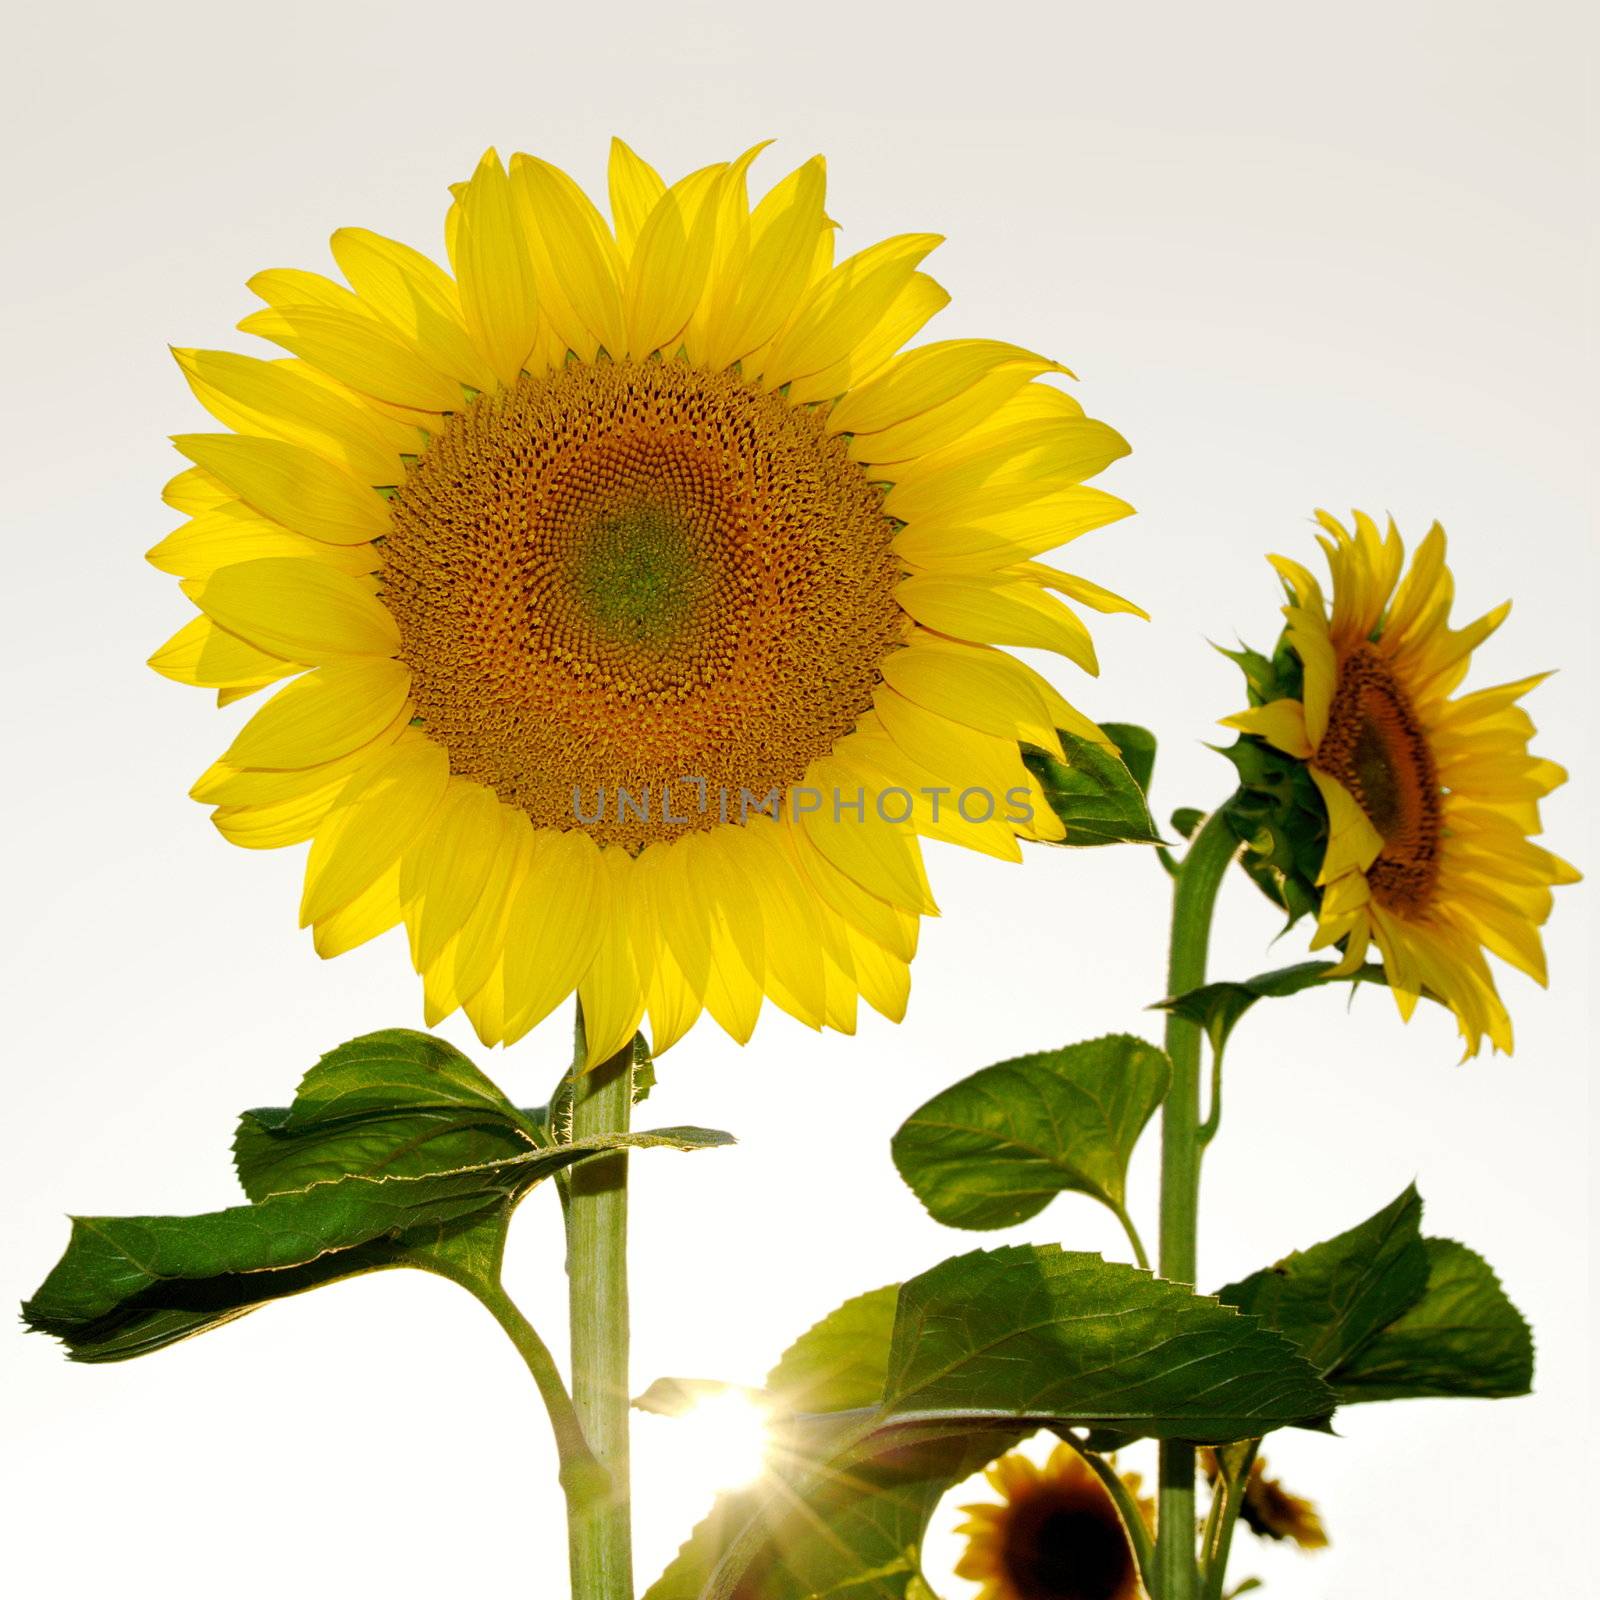 Sunflower 4 by milinz